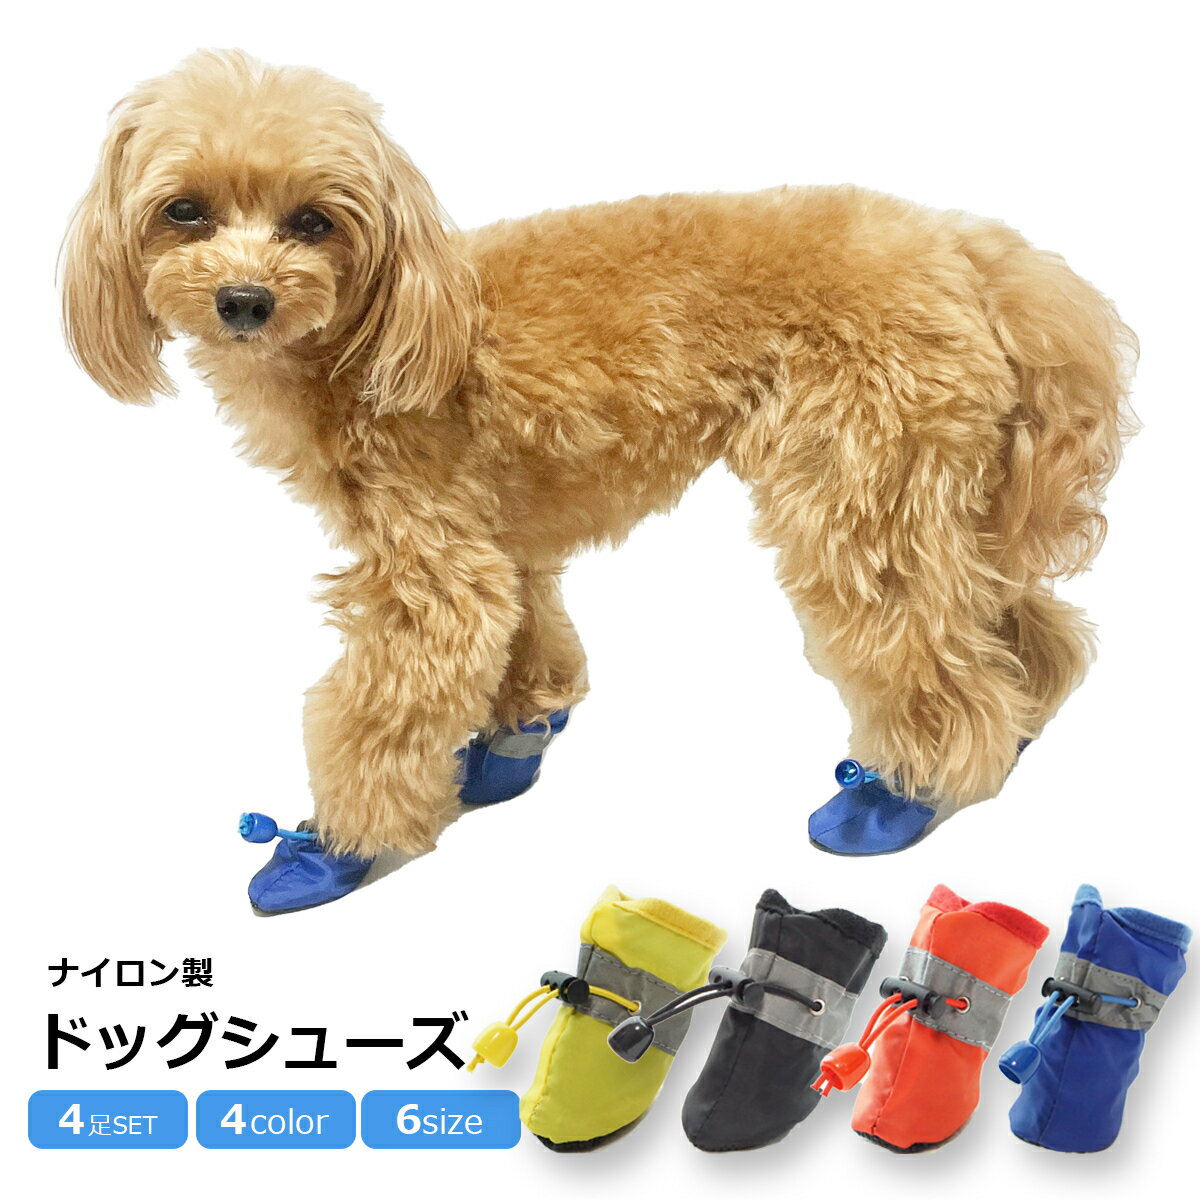 ドッグシューズ 犬用 ペット用 靴 ブーツ レインシューズ 保護シューズ 小型犬 中型犬 ペットグッズ ドッグウェア 履…